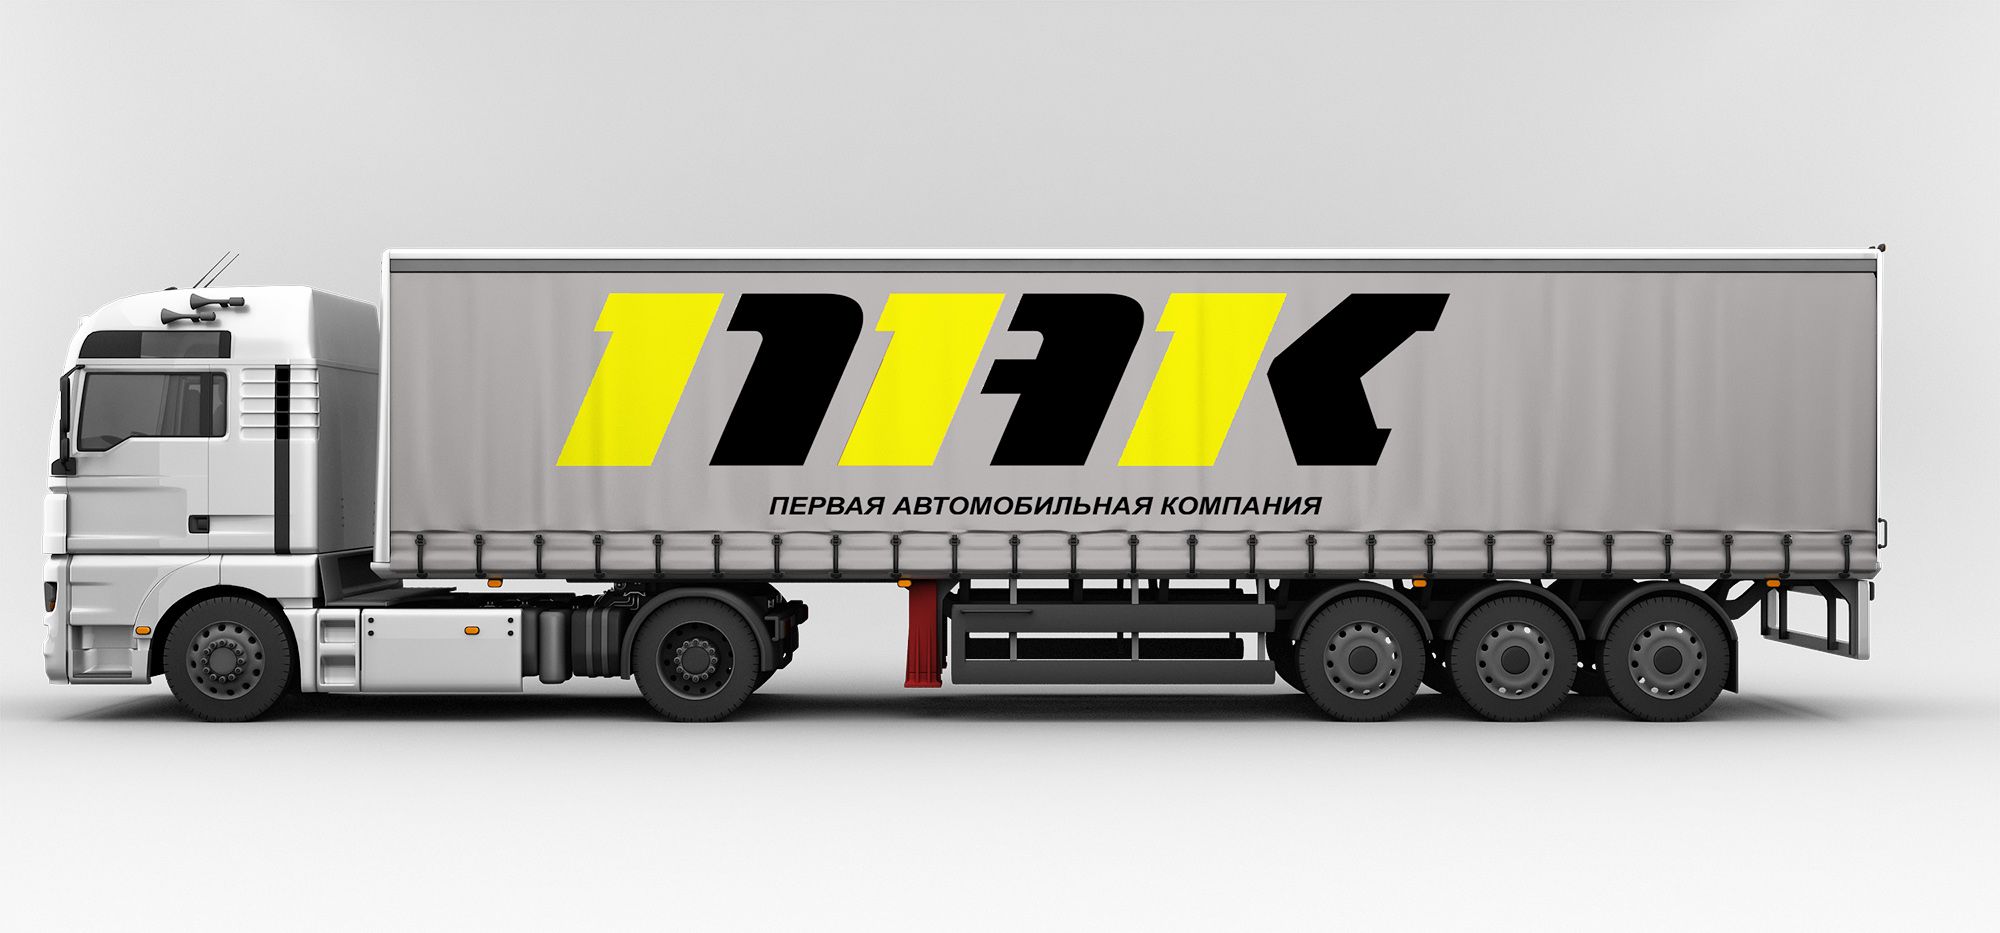 Логотип для Первая автомобильная компания (ПАК) - дизайнер serz4868